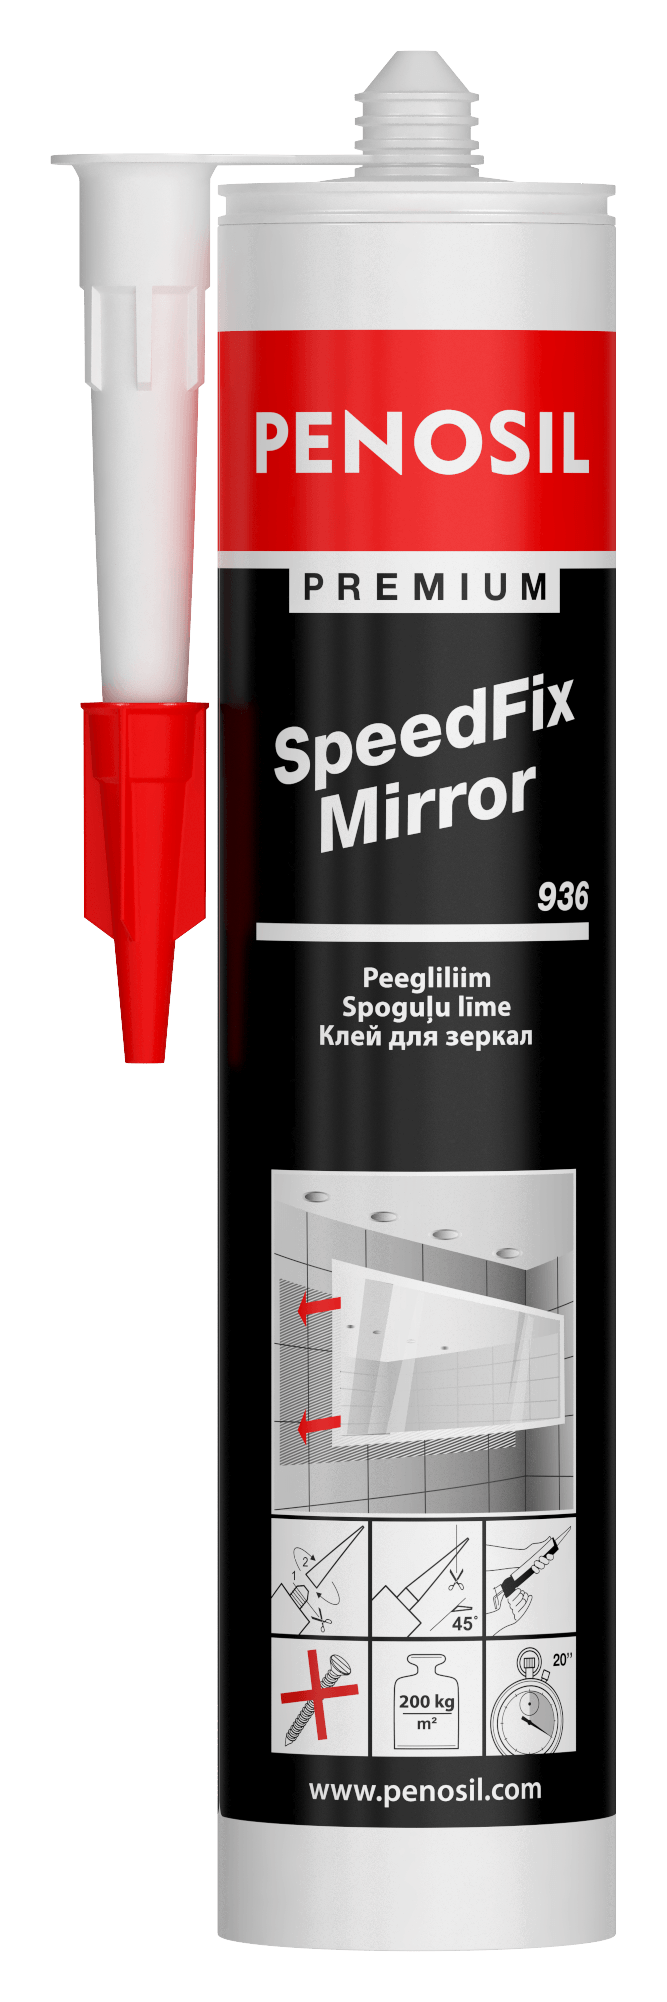 PENOSIL Premium SpeedFix Mirror 936 adhesive